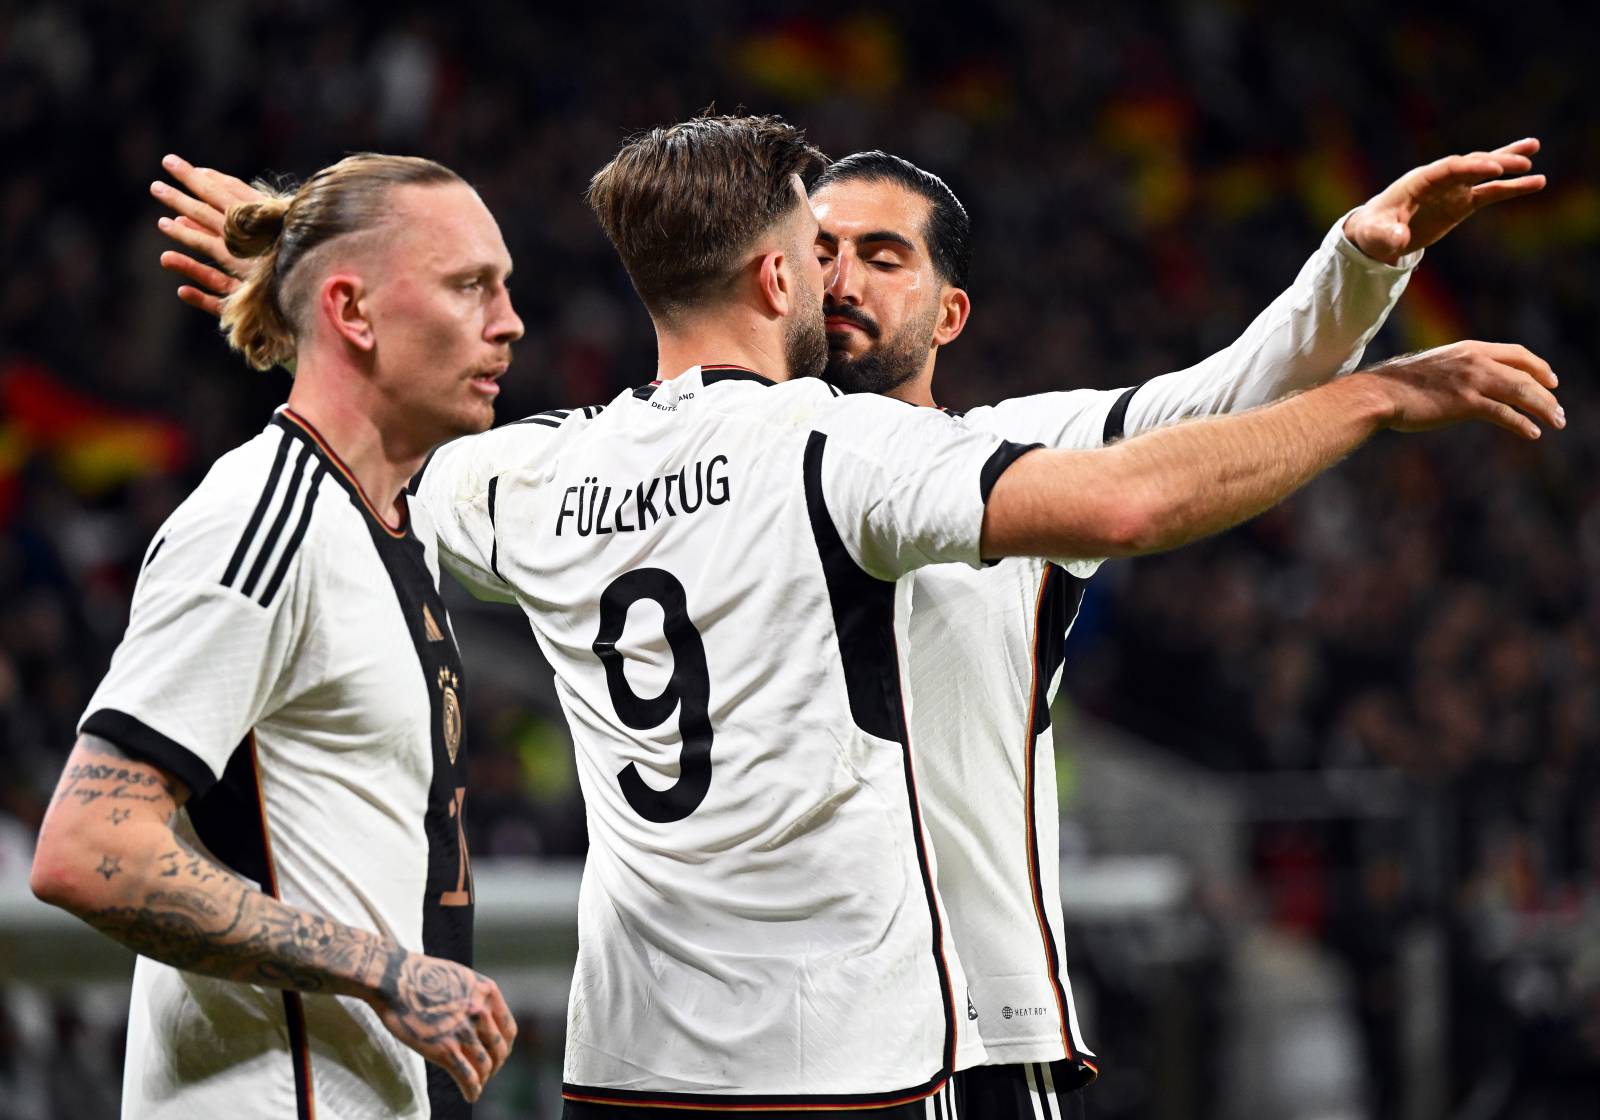 Германия переиграла Перу благодаря двум голам Фюллькруга